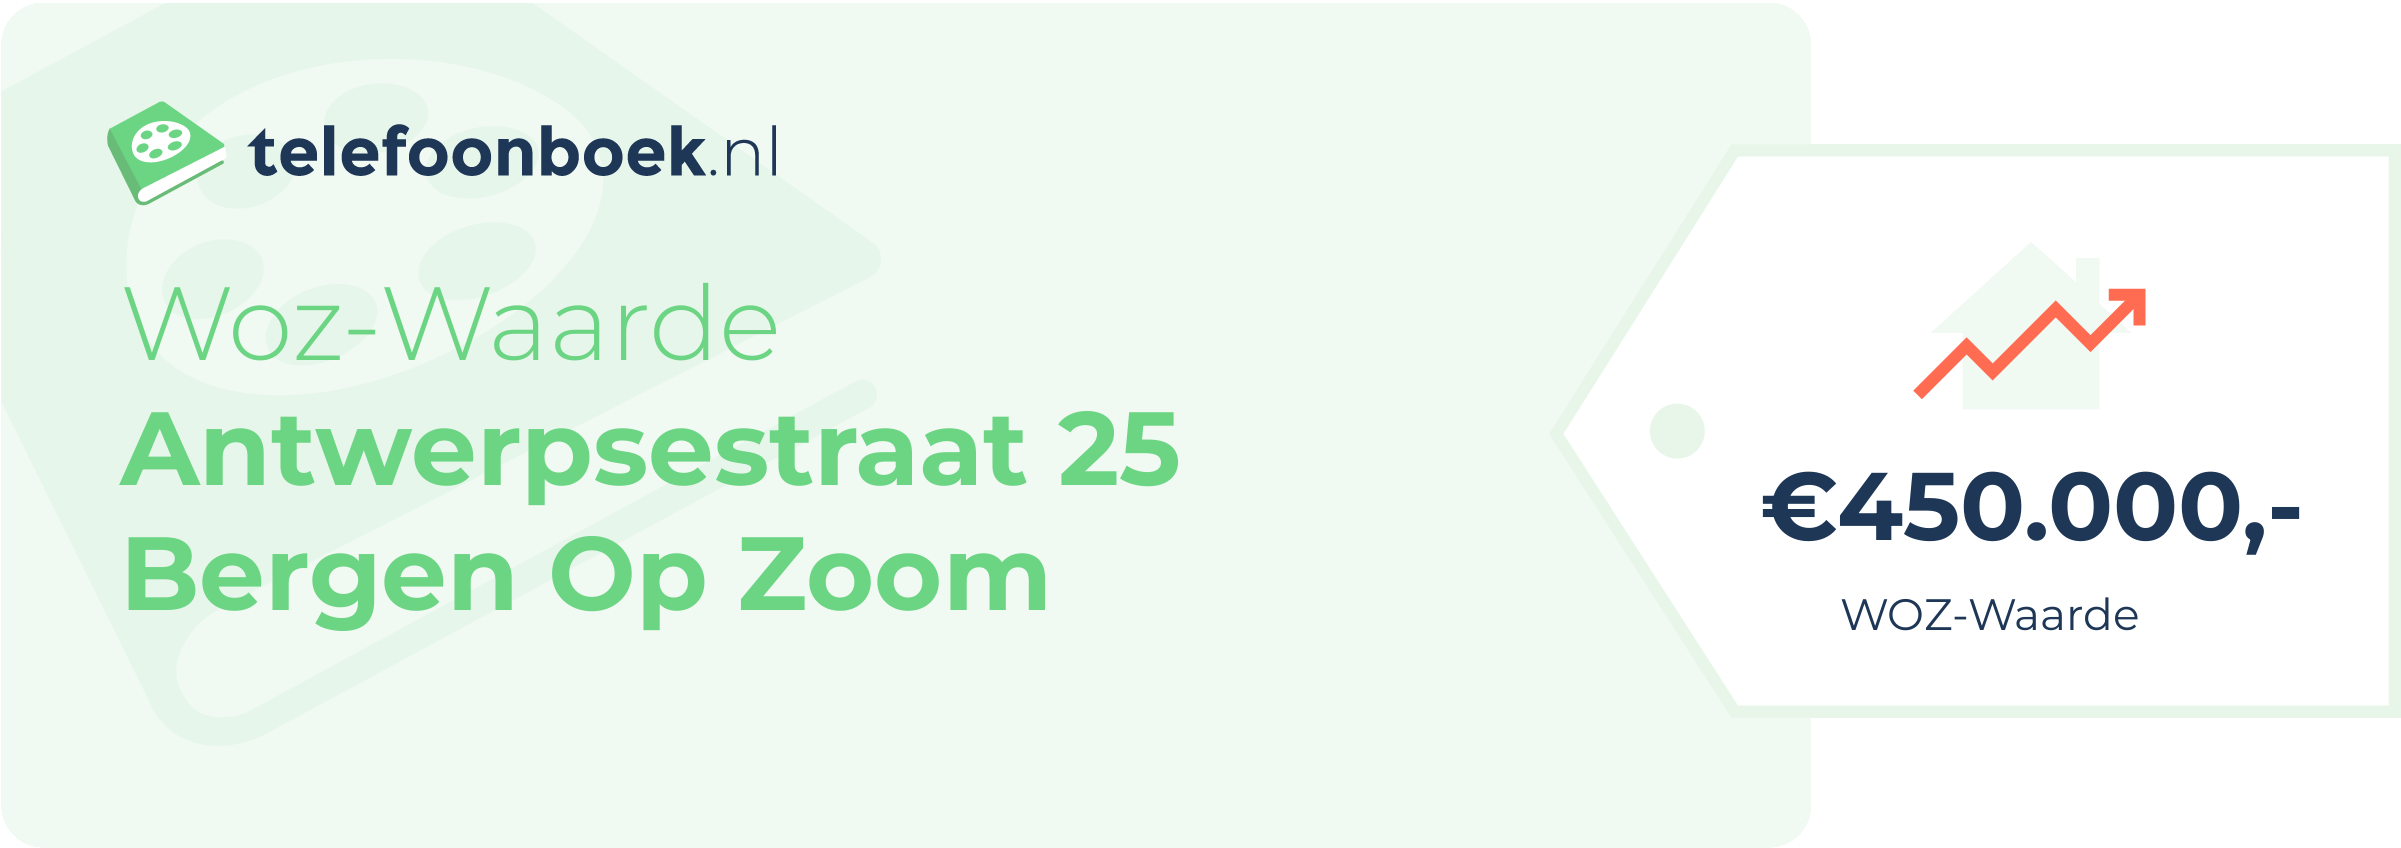 WOZ-waarde Antwerpsestraat 25 Bergen Op Zoom